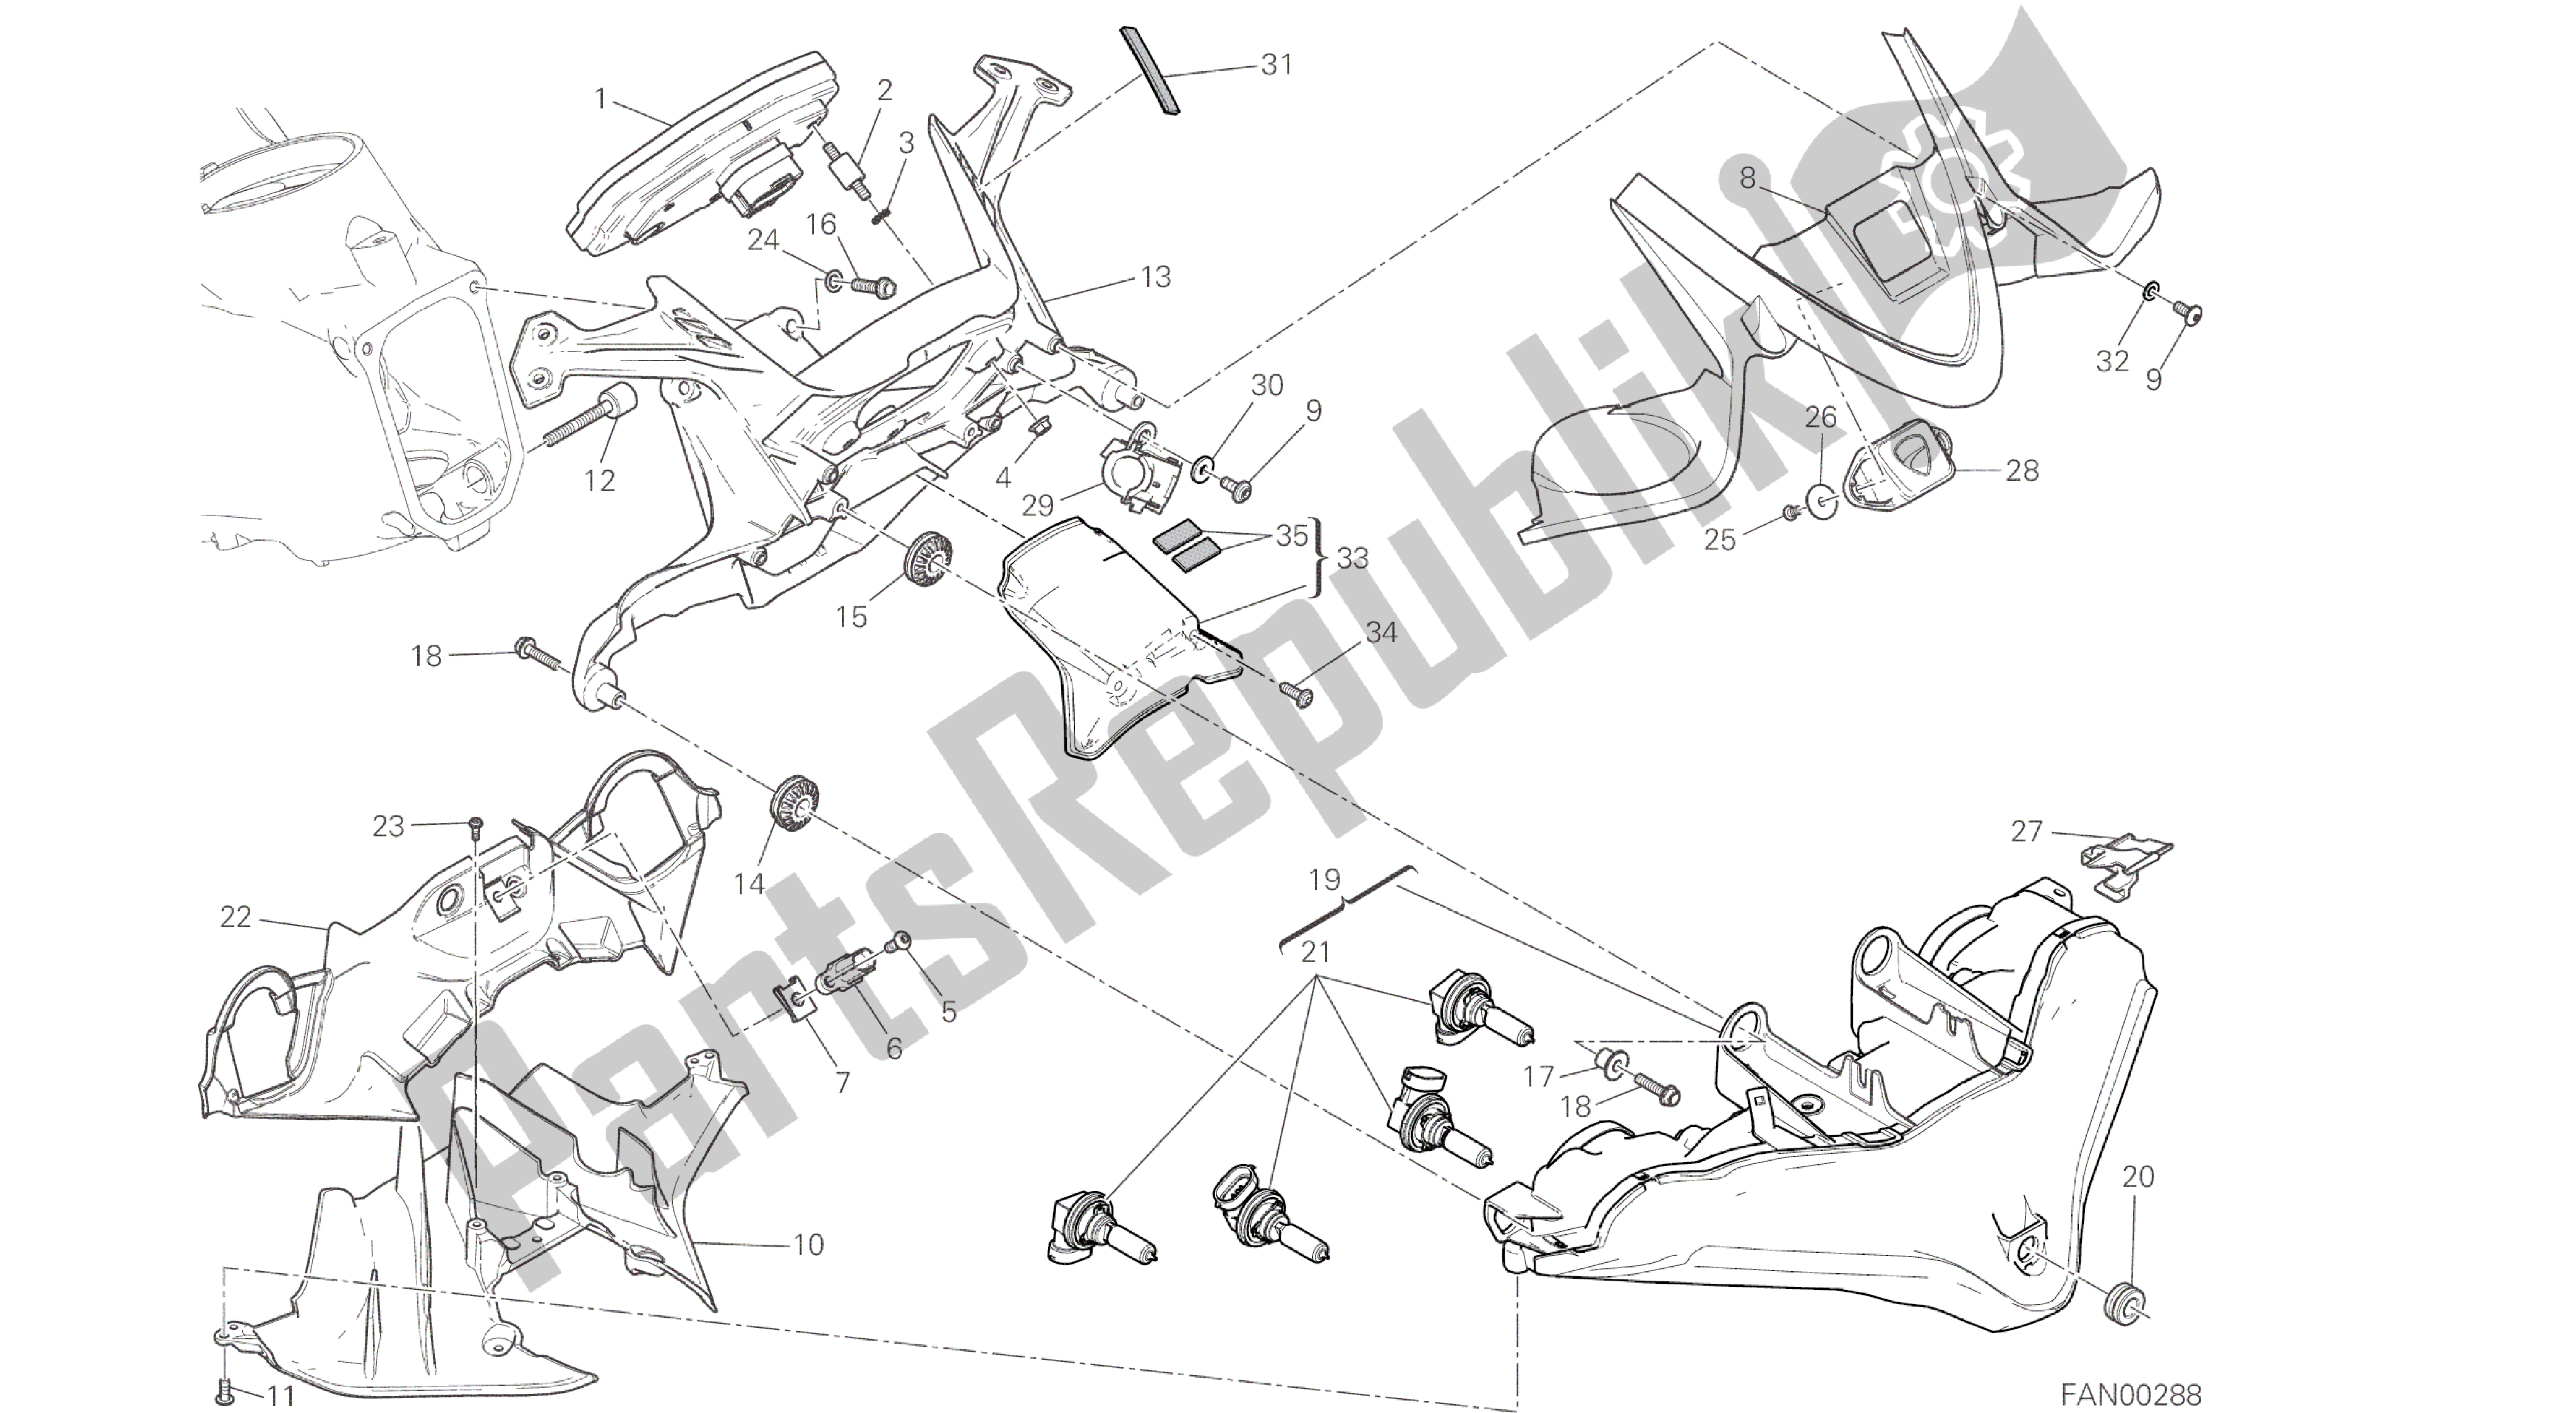 Todas las partes para Dibujo 020 - Fanale Anteriore E Cruscotto [mod: 959,959aws; Xst: Marco De Grupo Aus, Eur, Fra, Jap, Twn] de Ducati Panigale 959 2016